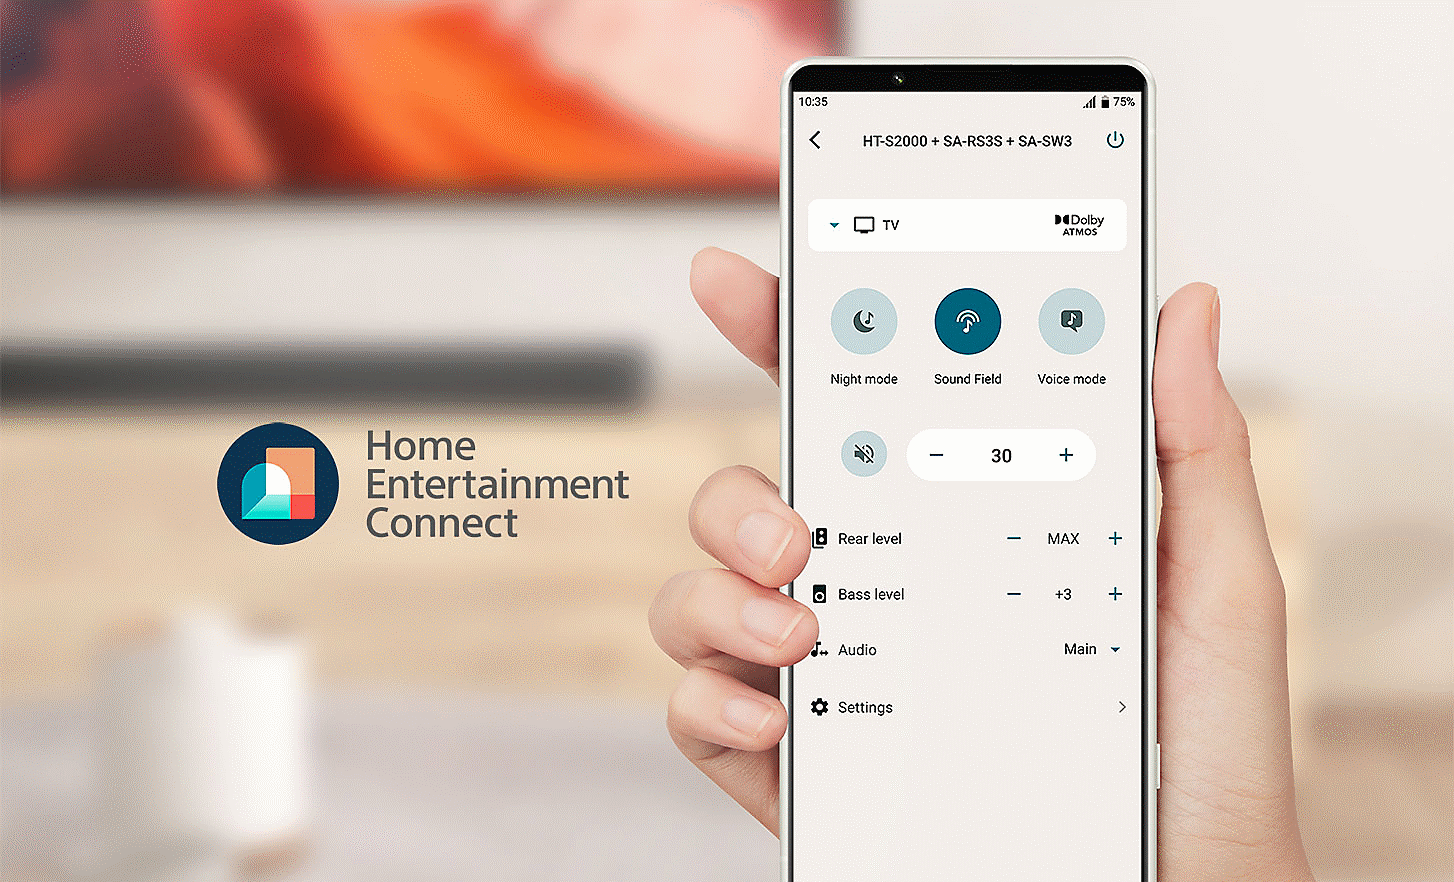 Slika roke, ki drži mobilni telefon s prikazom menija z nastavitvami, na levi strani je logotip aplikacije Home Entertainment Connect